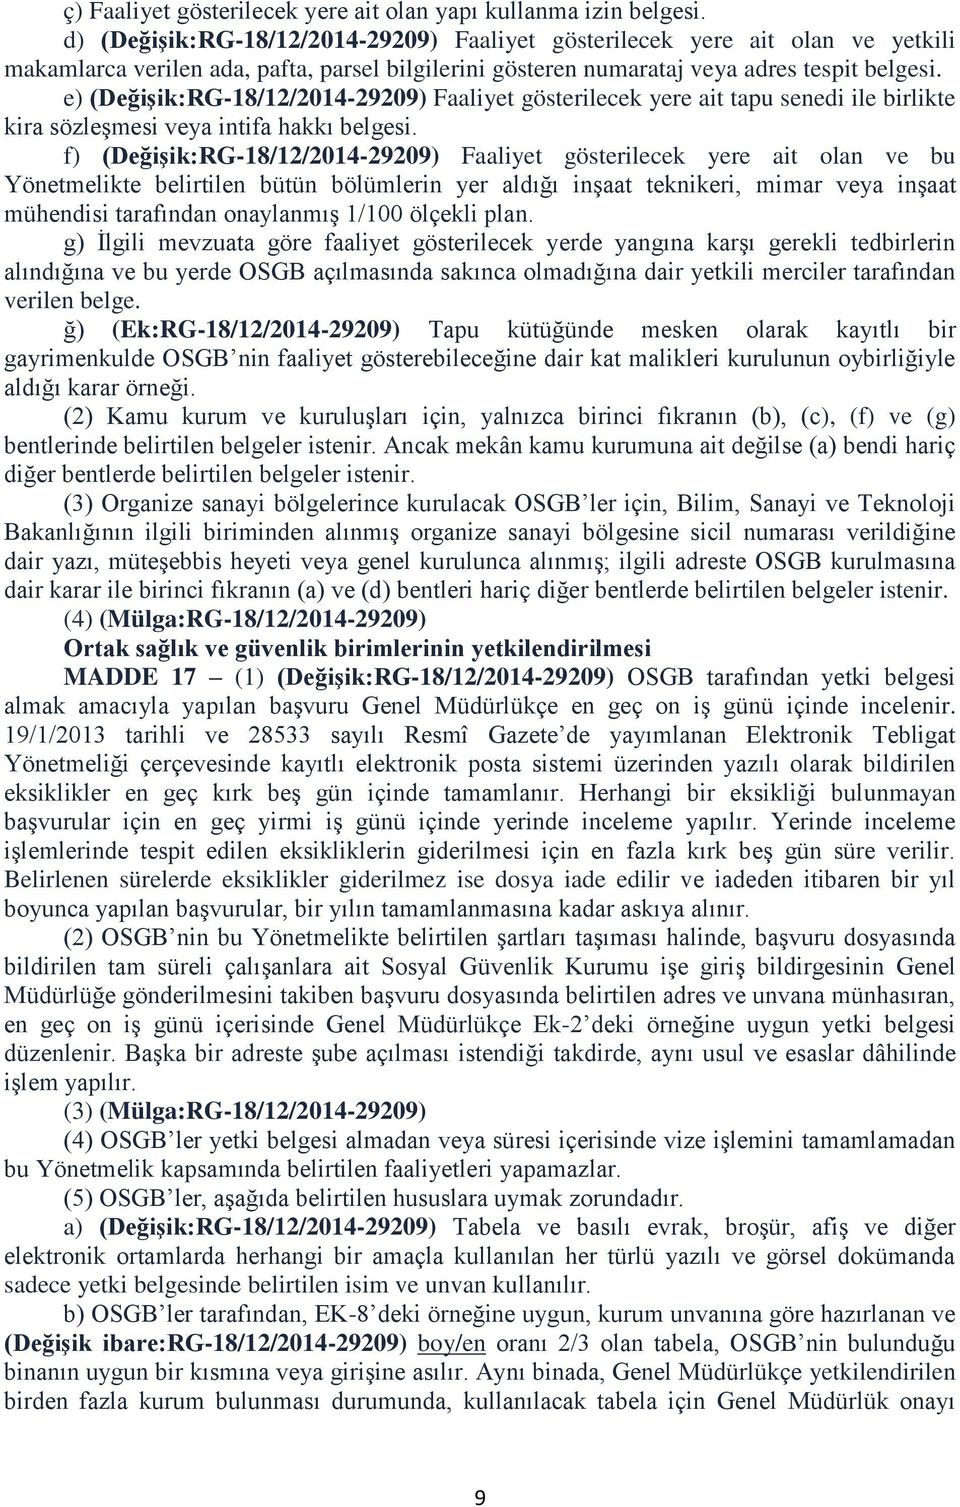 e) (DeğiĢik:RG-18/12/2014-29209) Faaliyet gösterilecek yere ait tapu senedi ile birlikte kira sözleşmesi veya intifa hakkı belgesi.